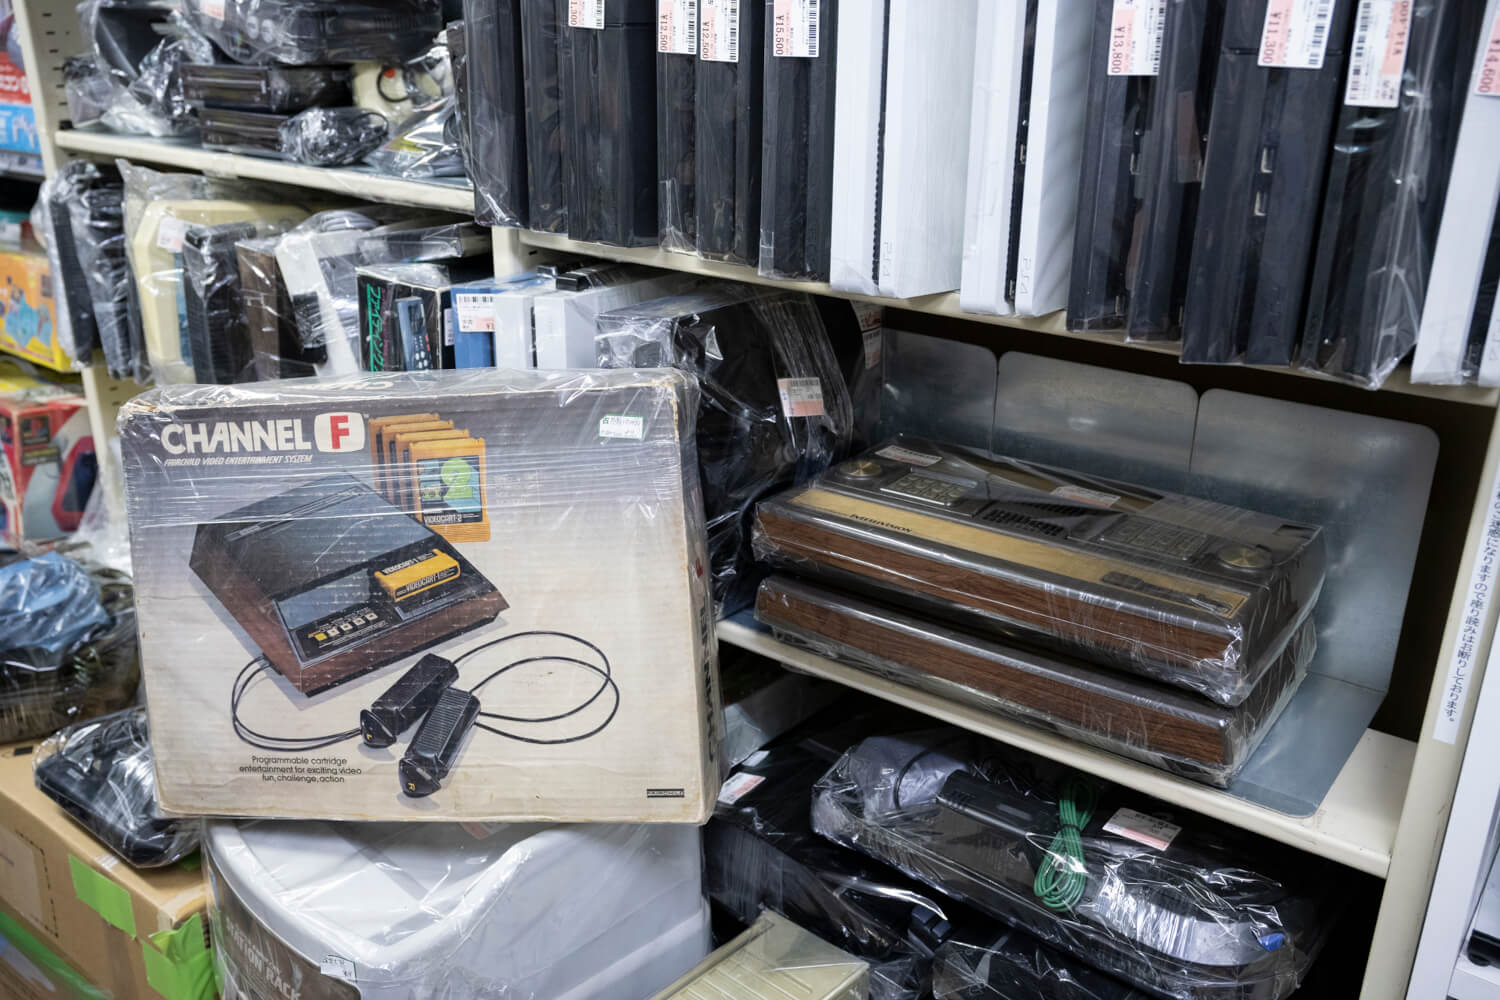 70年代のゲーム機など、激レア商品が当然のように陳列されていた。